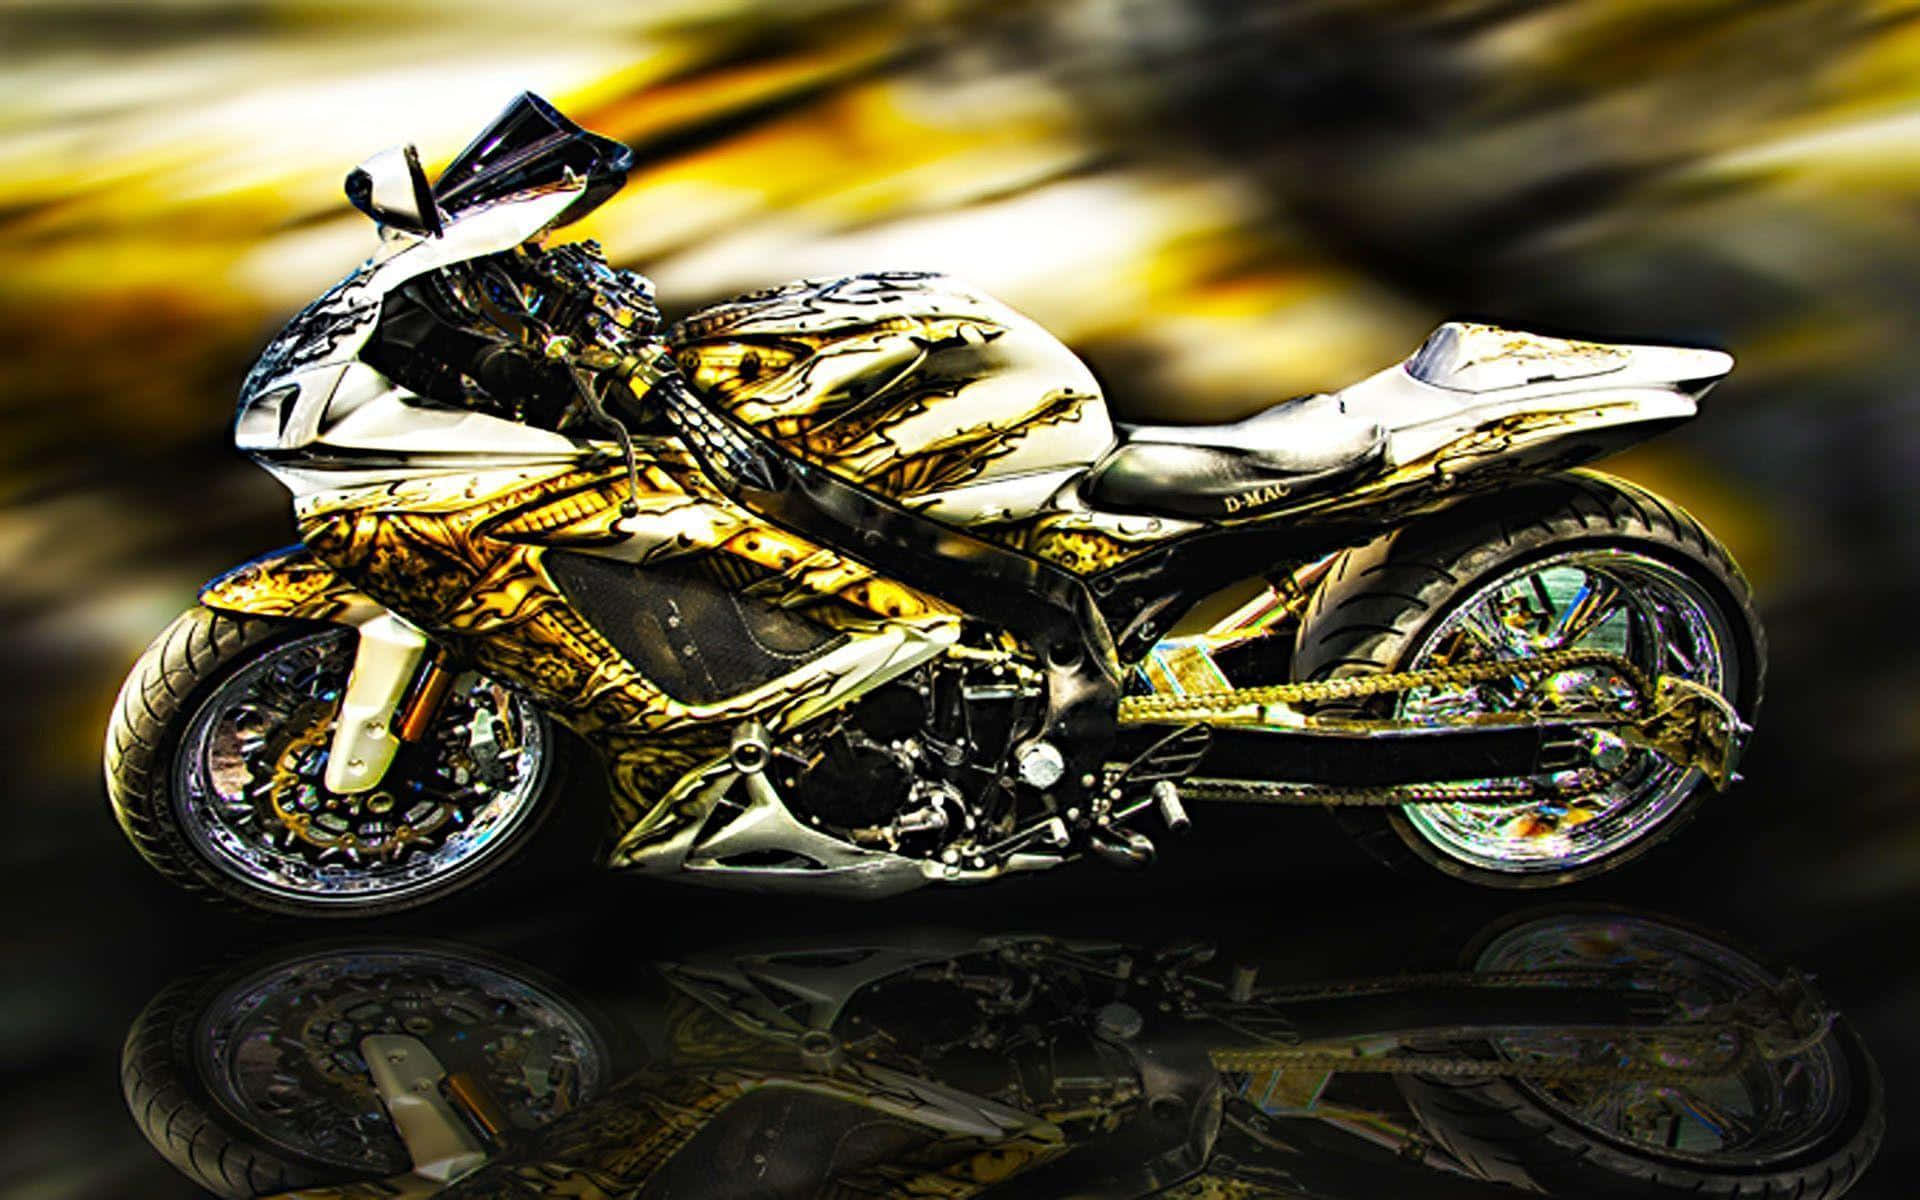 Billede af over overdådig gule motorcykel